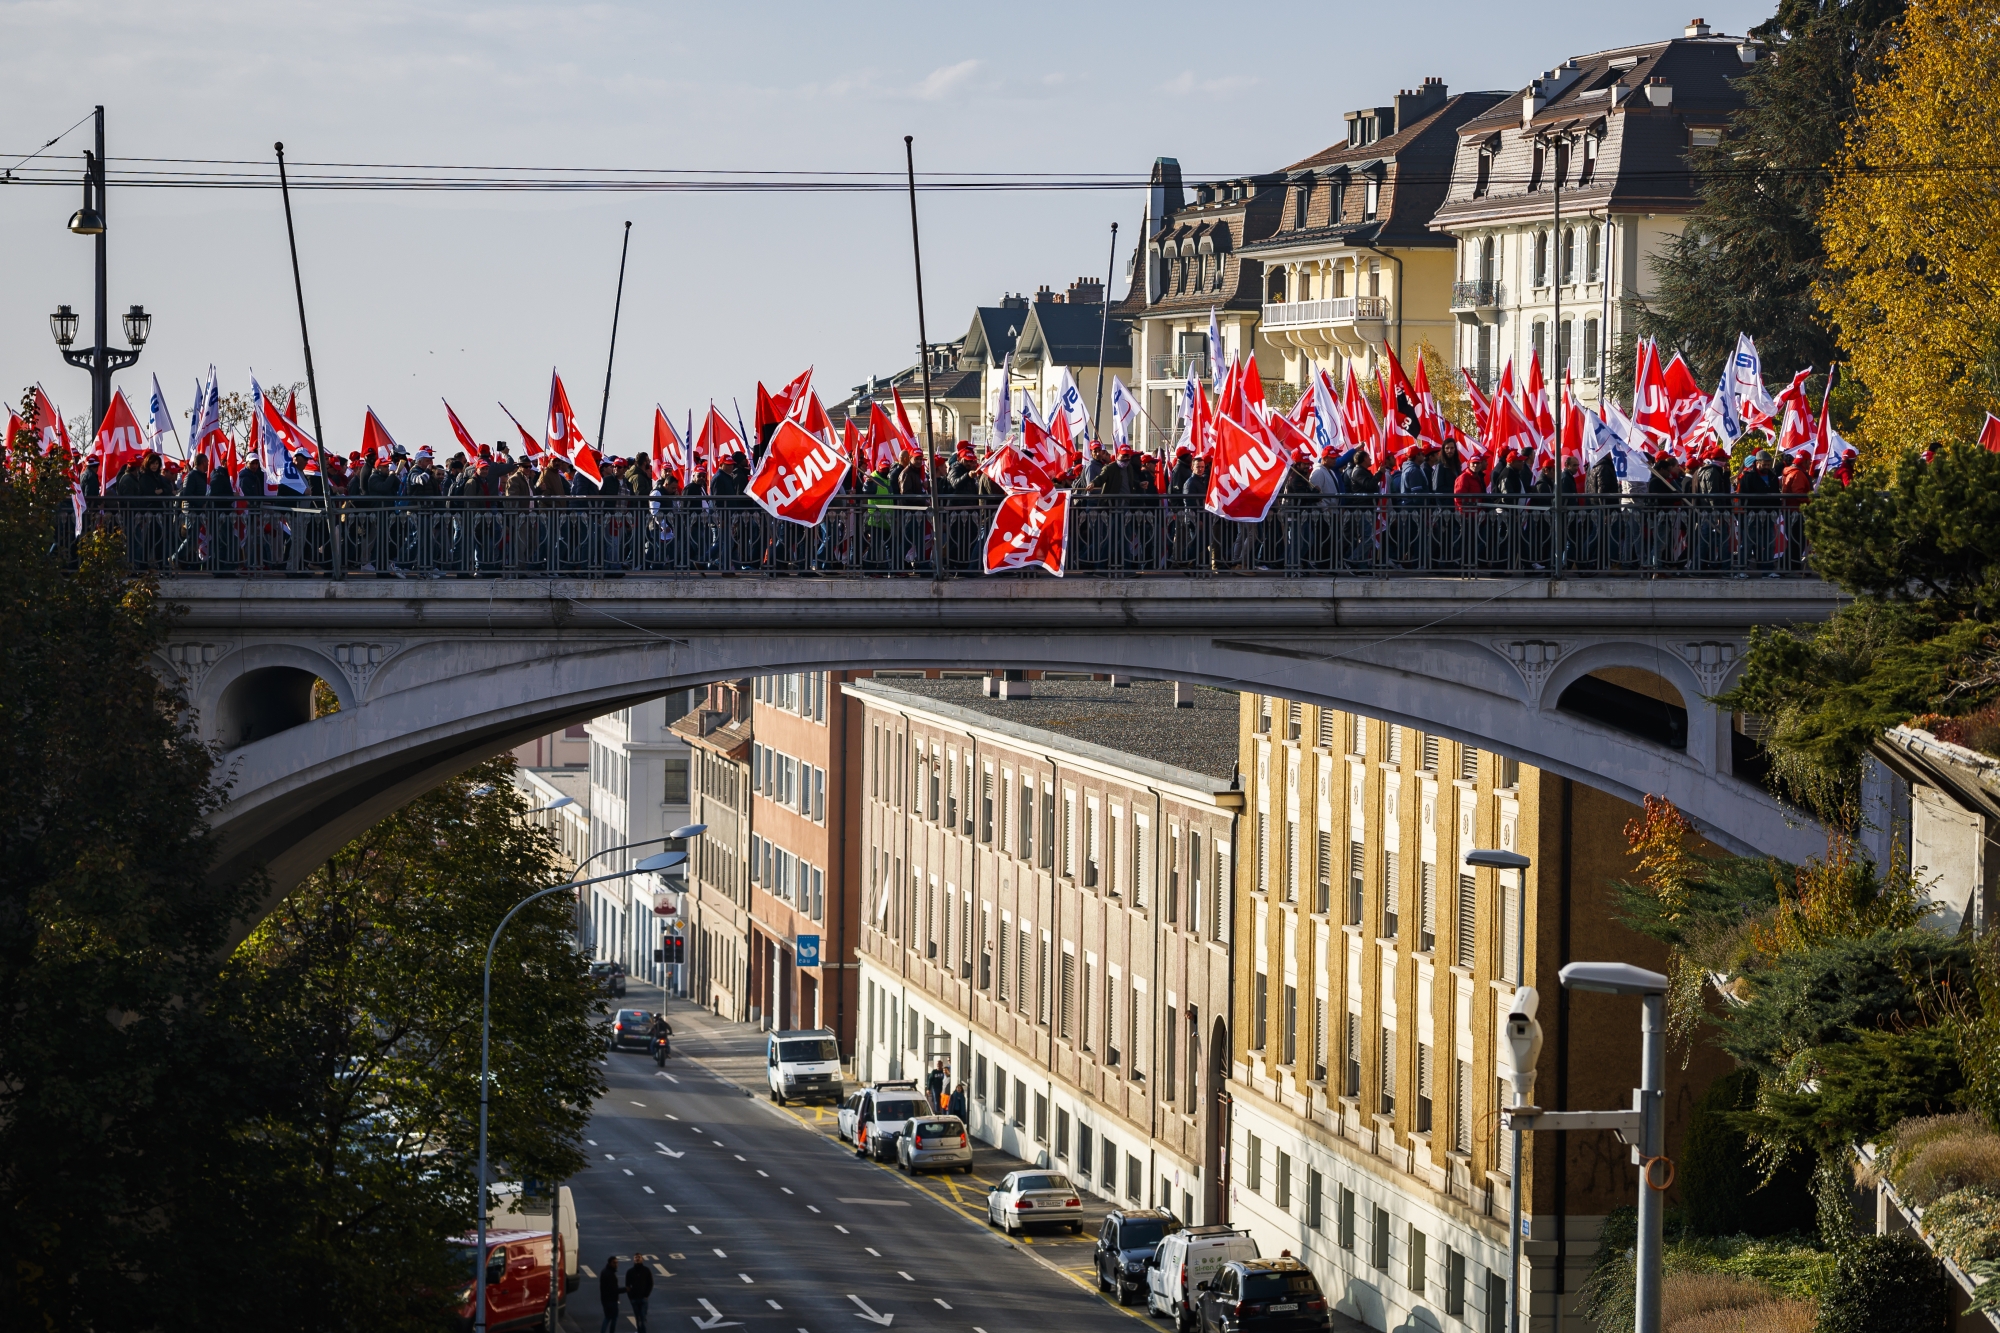 Des maçons dont le nombre est estime entre 3000 et 4000, selon la police et les organisateurs respectivement, manifestent dans la rue lors de la première de deux journées de protestation des travailleurs de la construction du canton de Vaud, ce lundi 5 novembre 2018 à Lausanne.